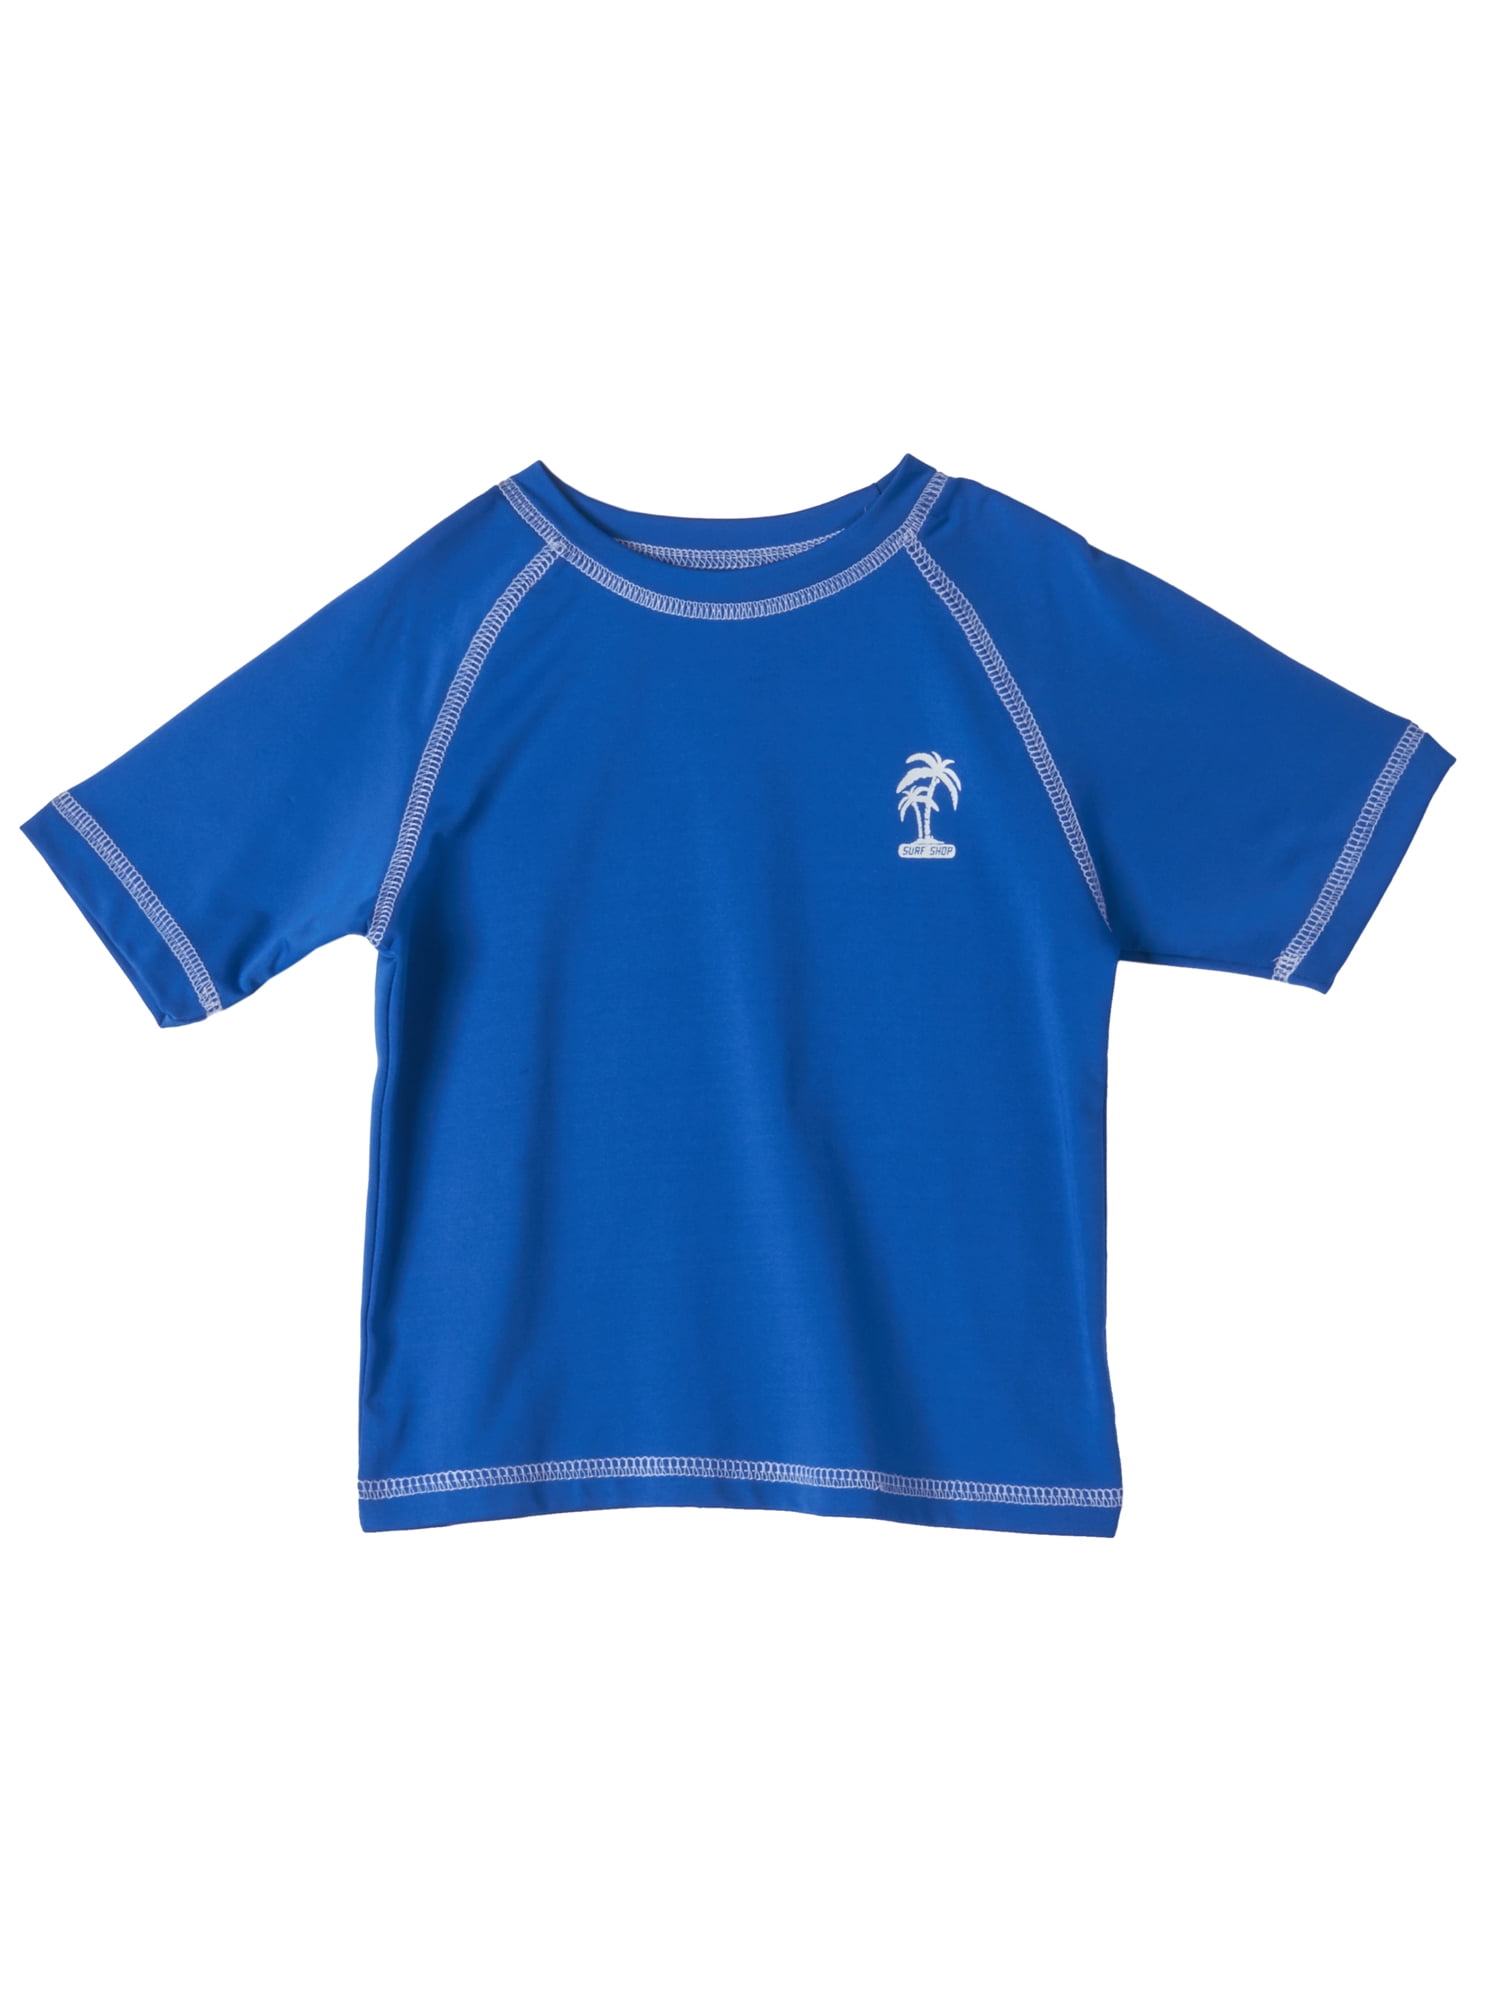 Blue 4T HowJoJo Little Boys Long Sleeve Rash Guard Shirts Swim Shirt UPF 50